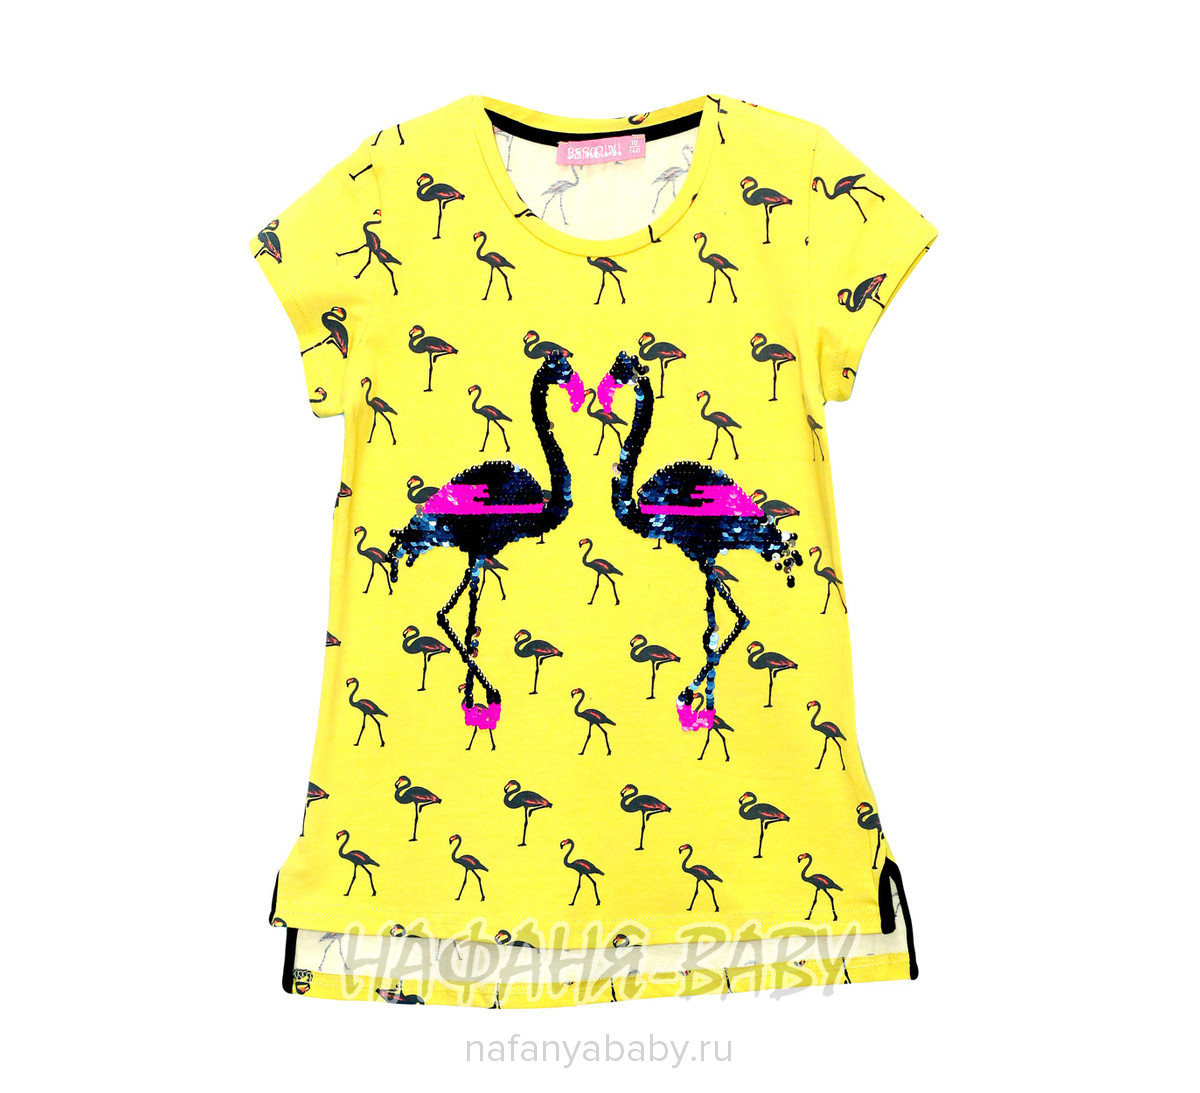 Детская футболка BERMINI арт: 6448, цвет желтый, оптом Турция